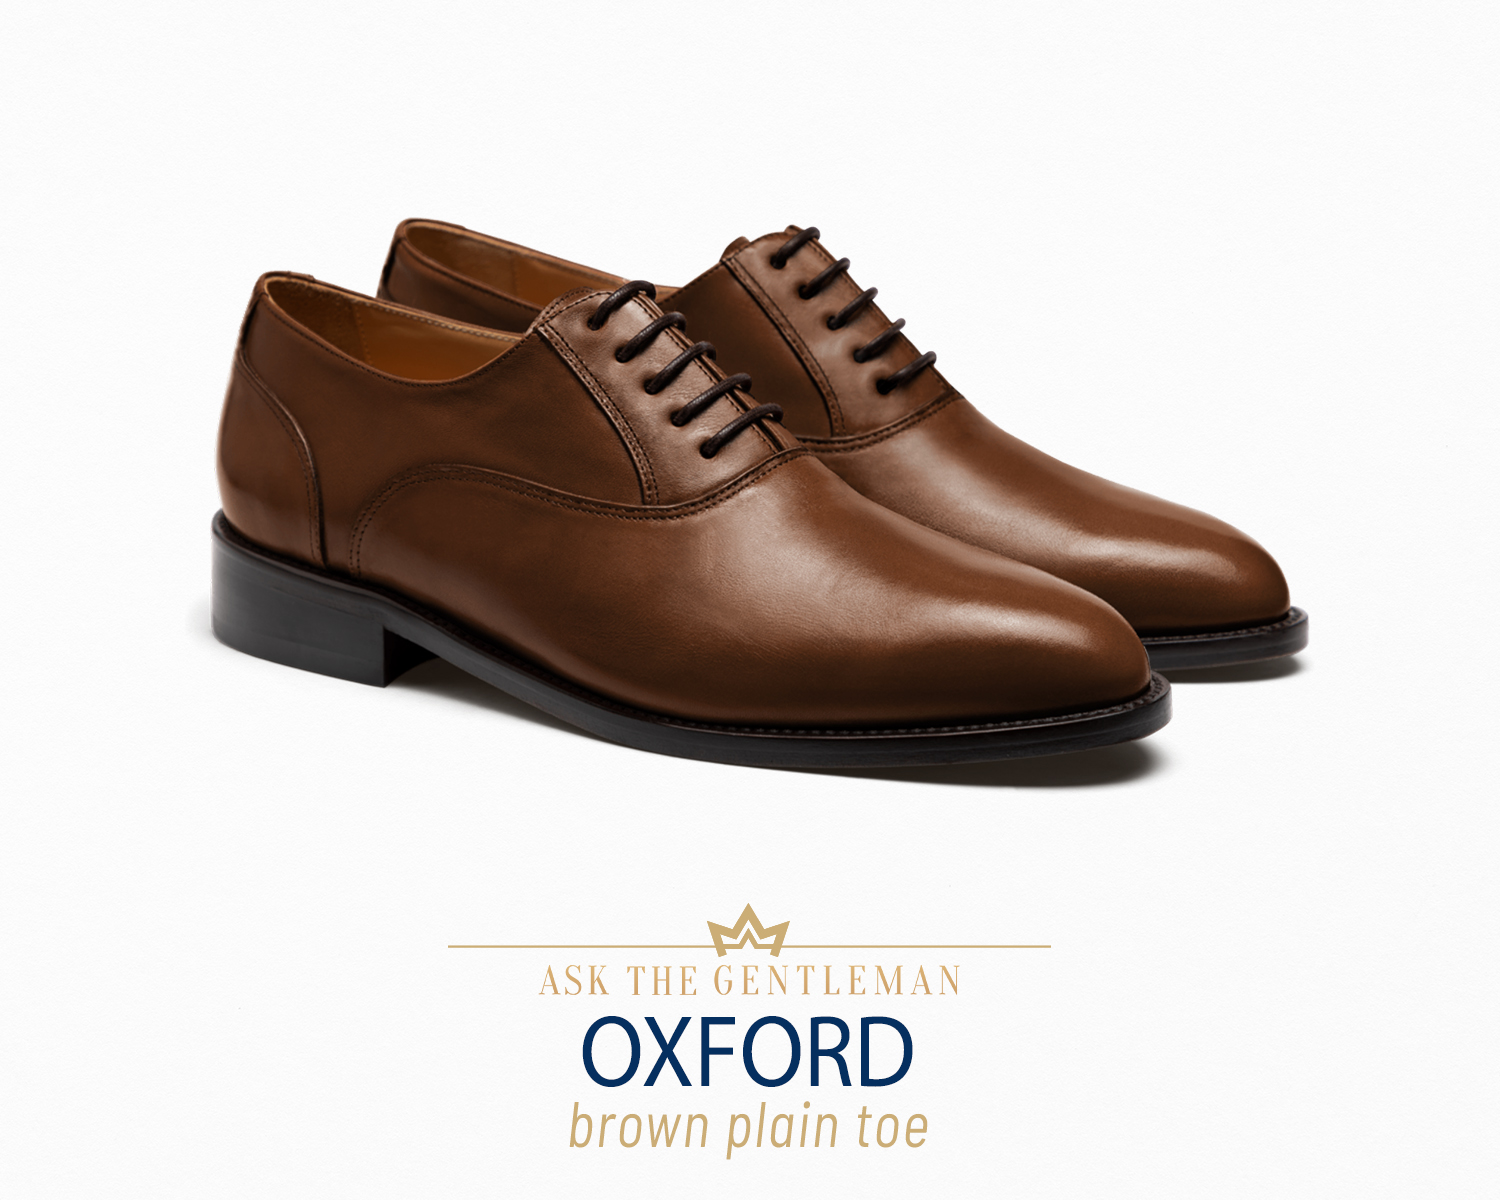 Brown Oxford dress shoe